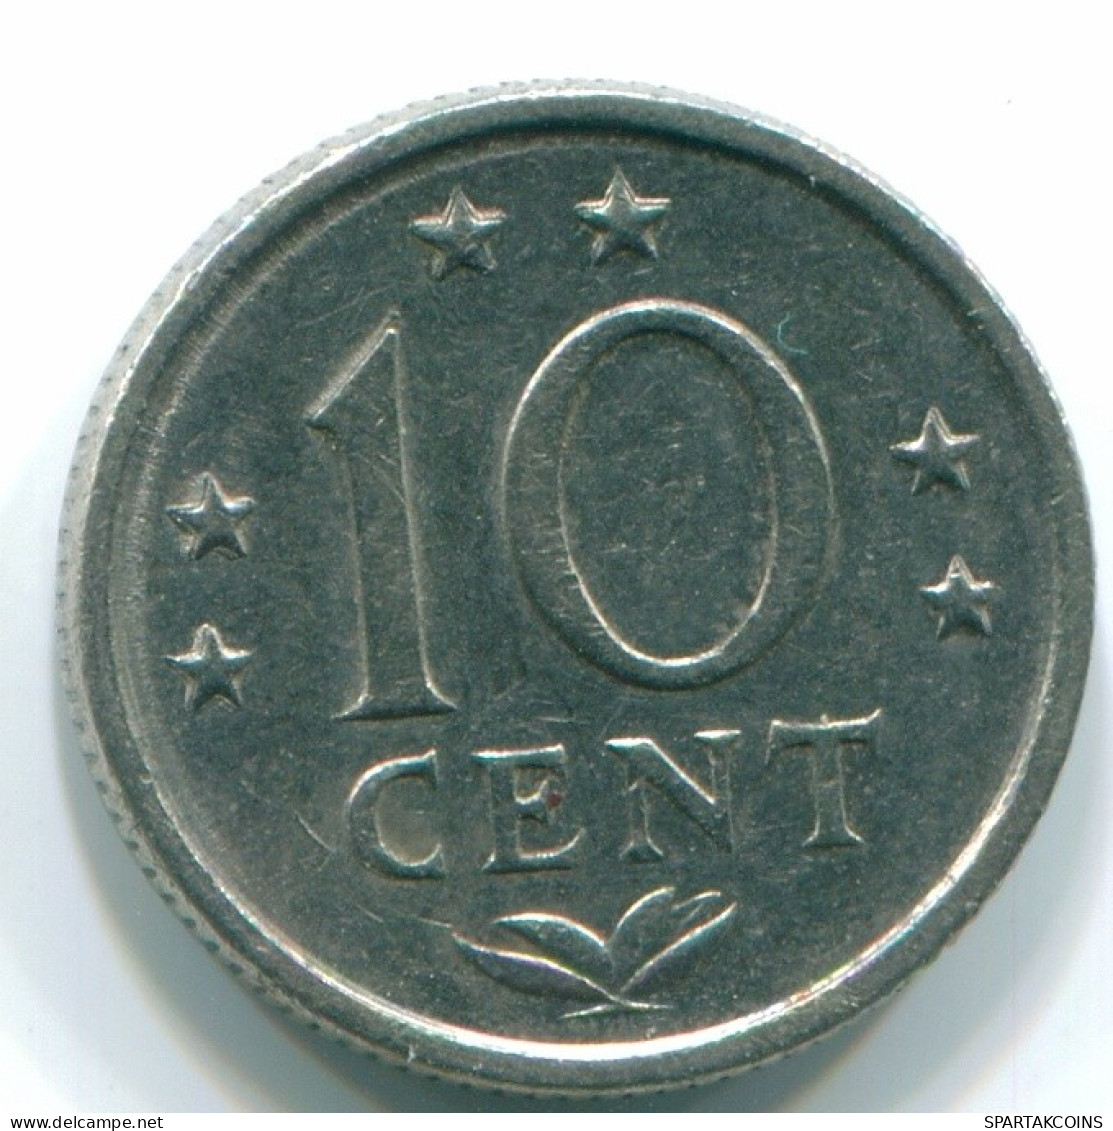 10 CENTS 1978 NIEDERLÄNDISCHE ANTILLEN Nickel Koloniale Münze #S13541.D.A - Niederländische Antillen